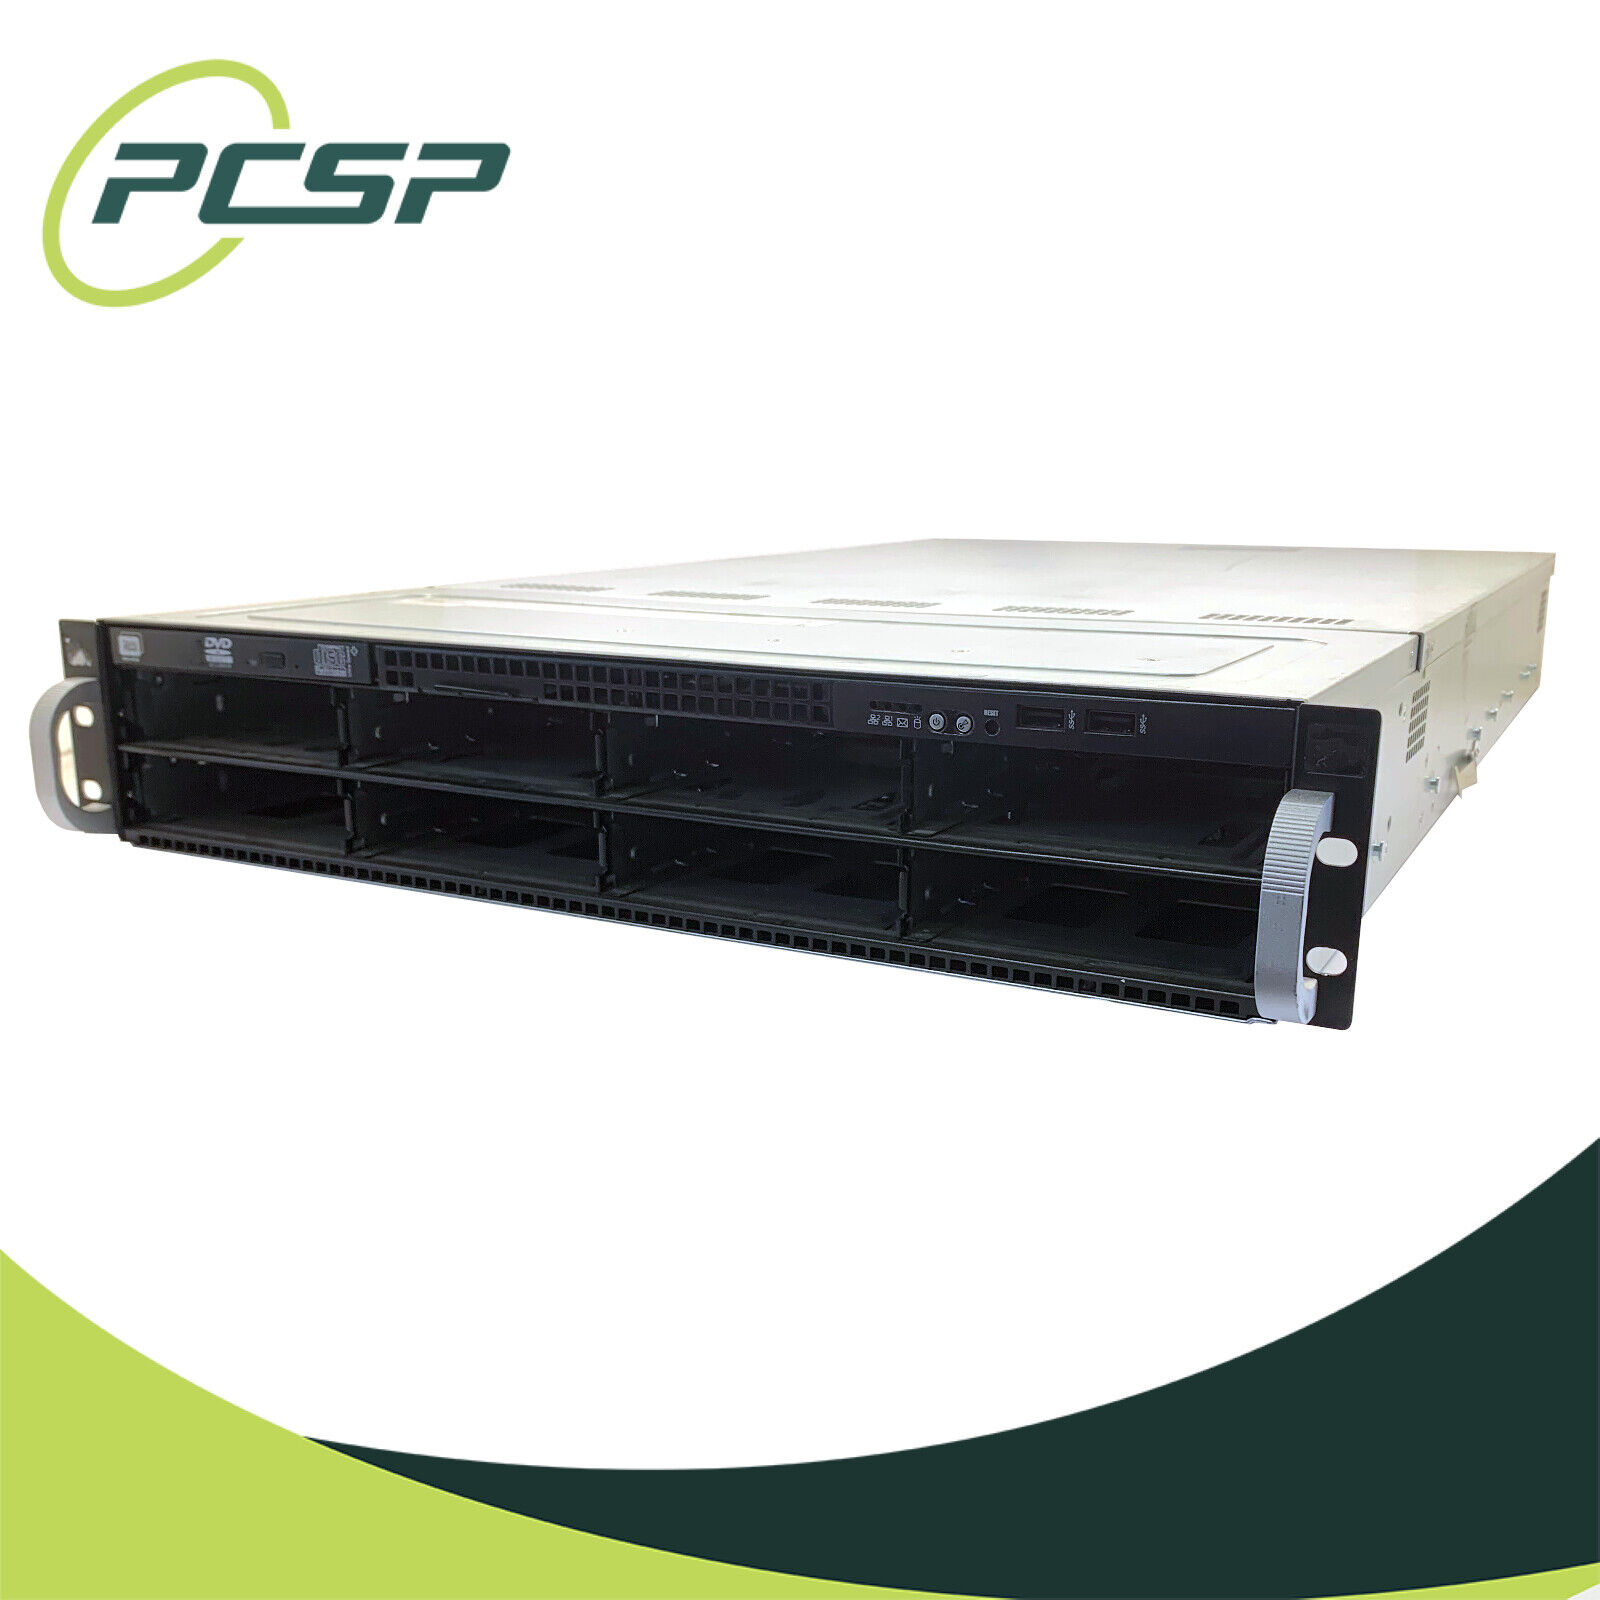 ASUS ESC4000 G3 8B LFF 24 Core AI GPU Server - 2x E5-2650v4 - 128GB RAM - No HDD